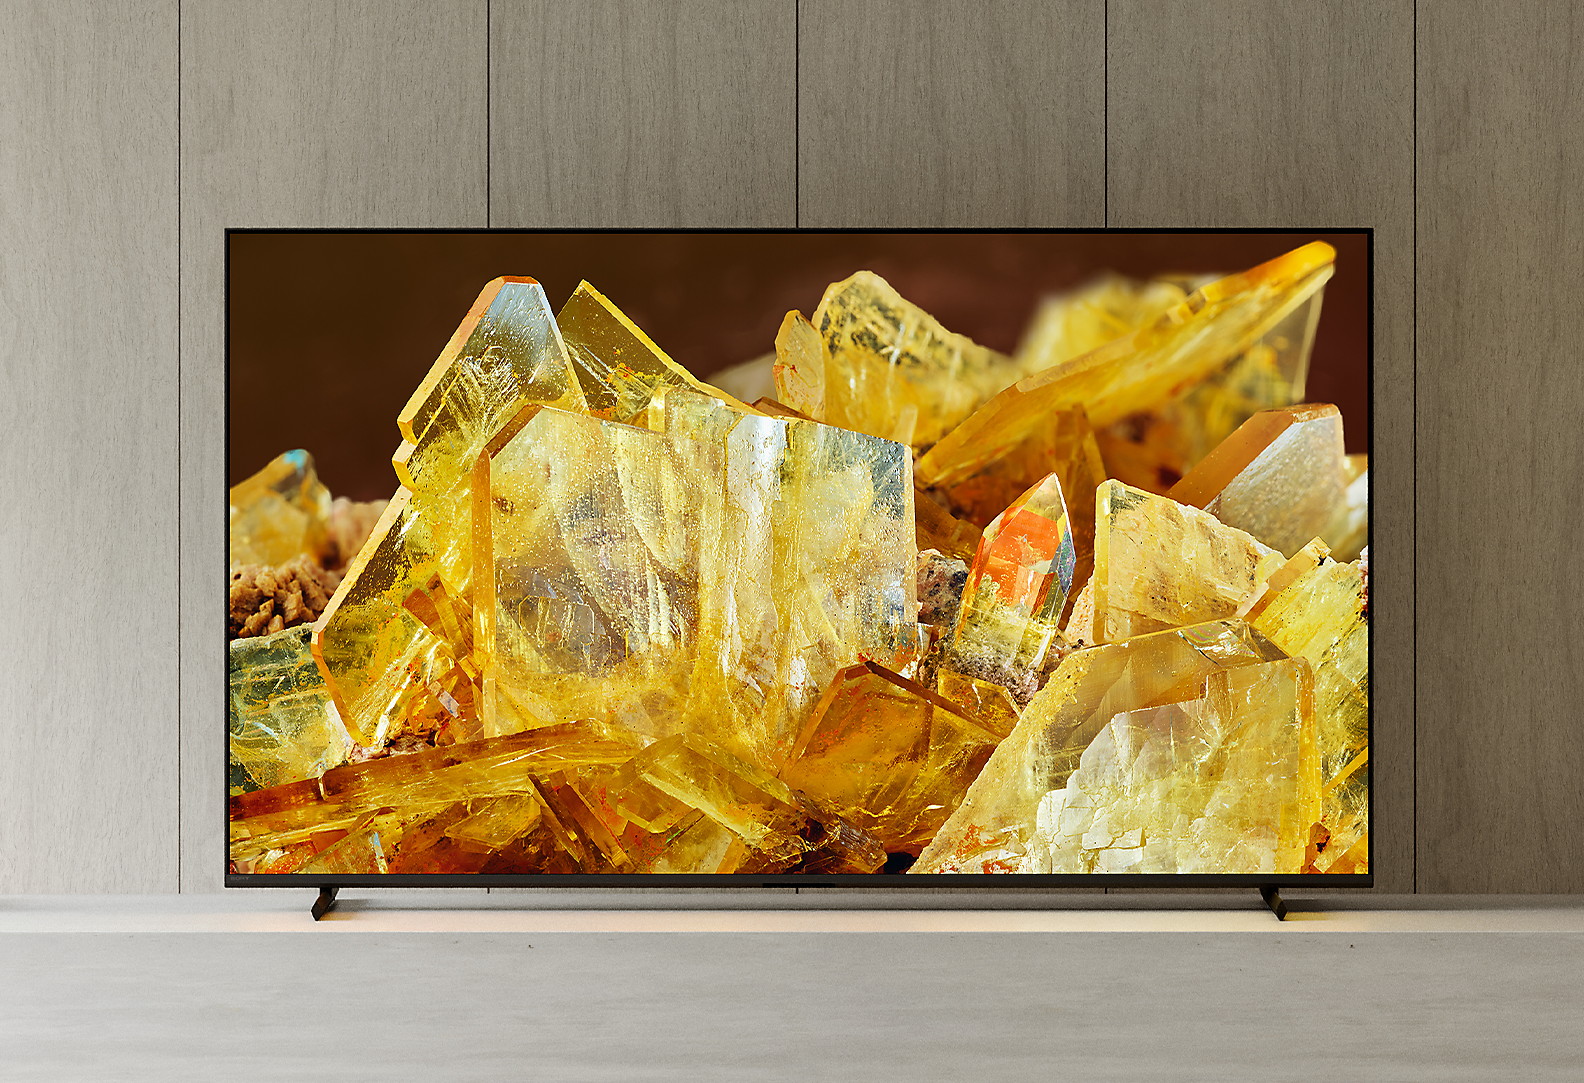 客廳中的 BRAVIA XR 顯示器，畫面顯示琥珀色水晶的特寫影像